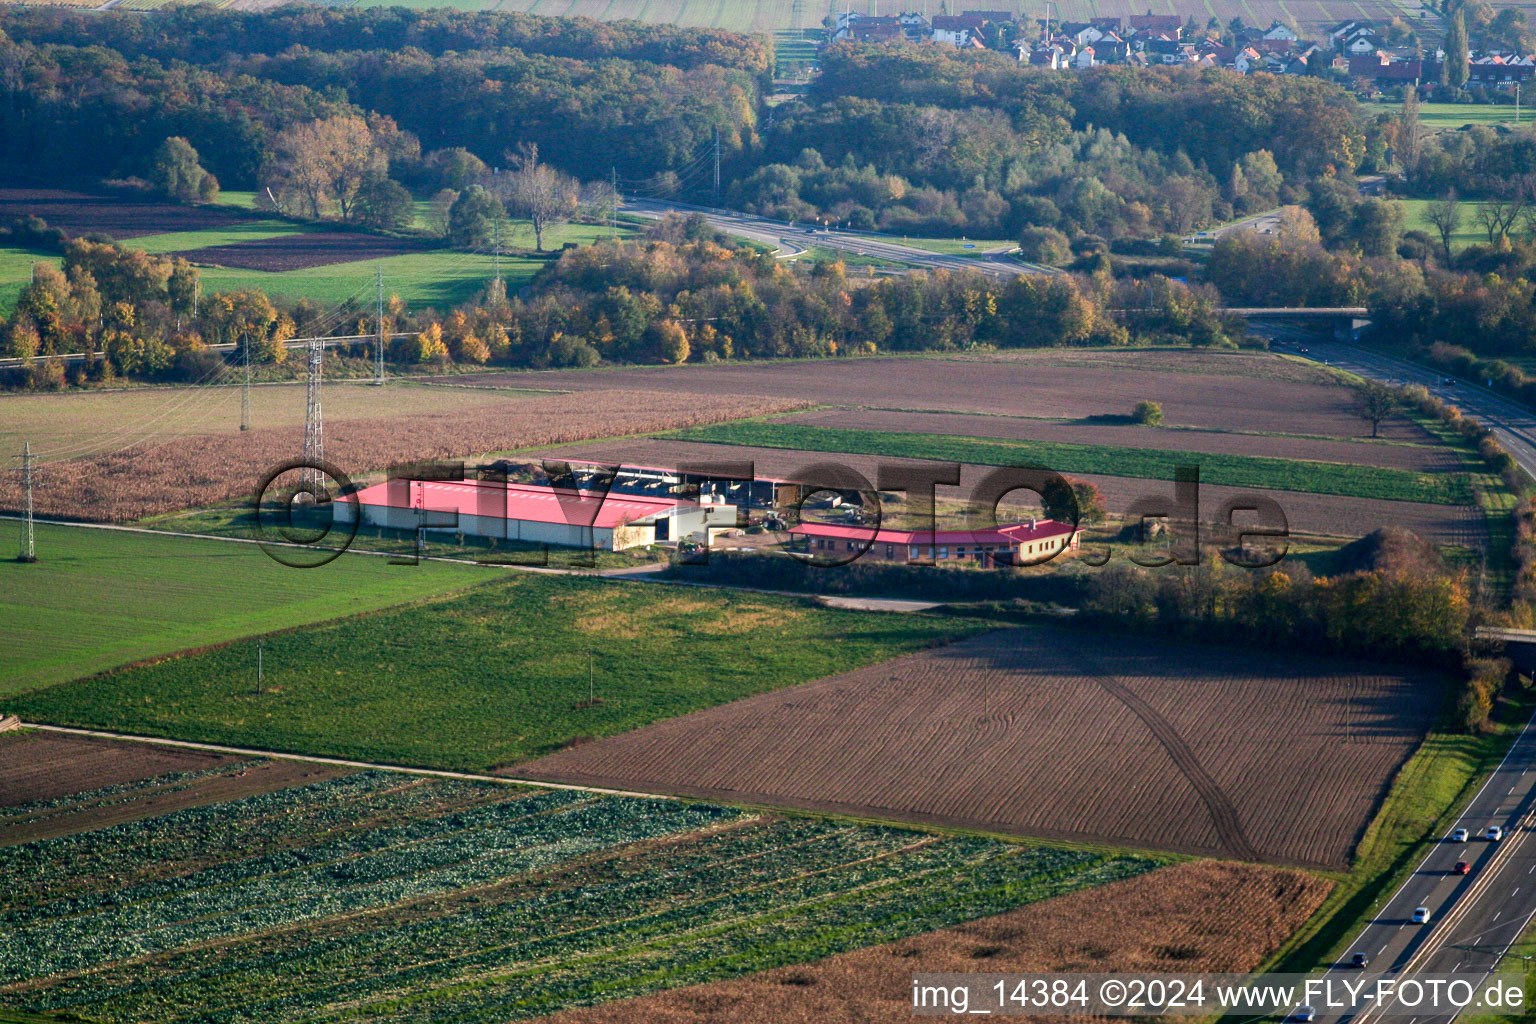 Hühnerhof Eierfarm in Erlenbach bei Kandel im Bundesland Rheinland-Pfalz, Deutschland aus der Luft